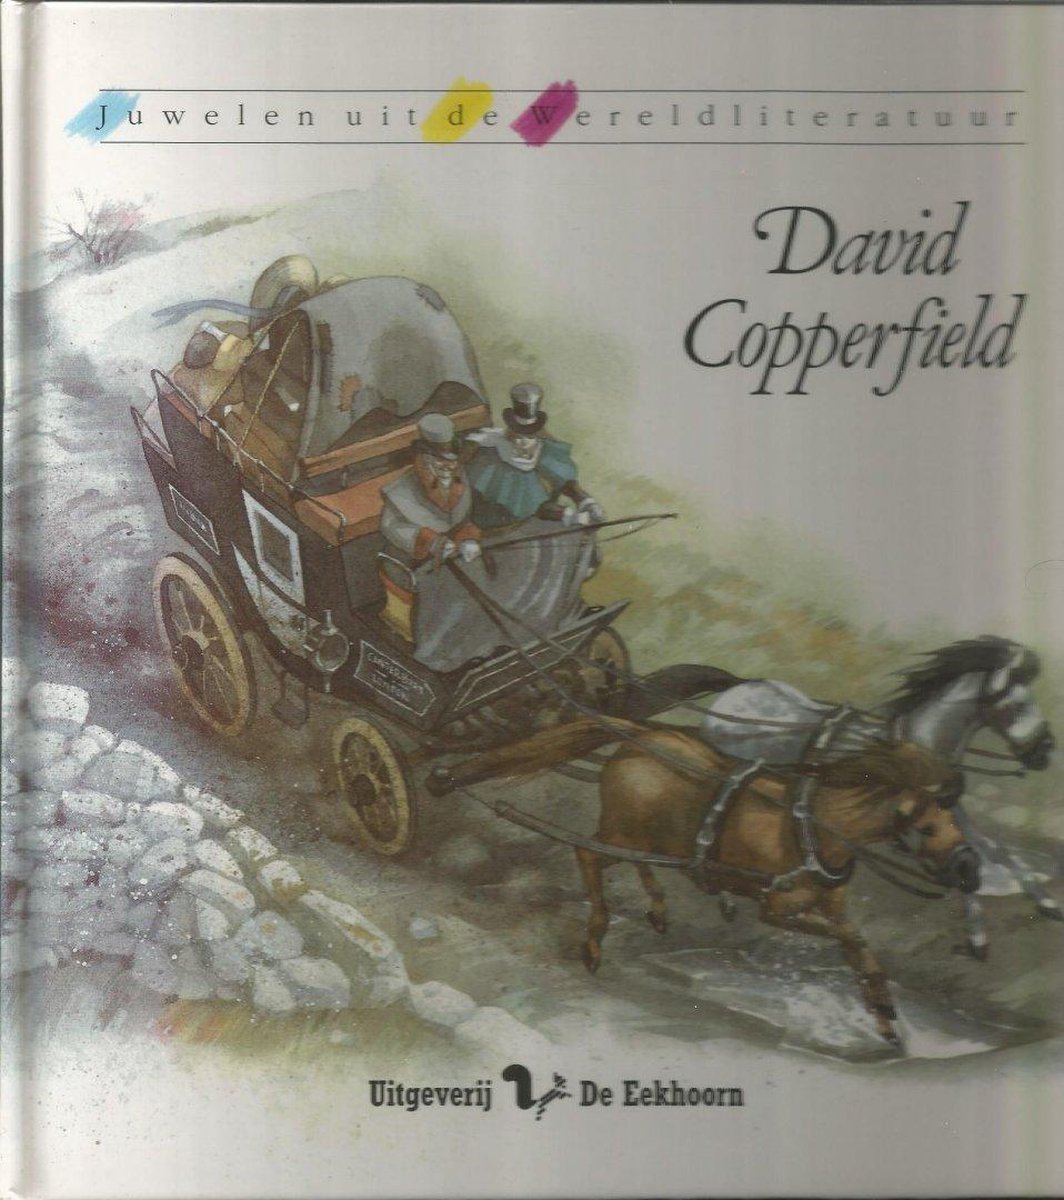 David Copperfield / Juwelen uit de wereldliteratuur